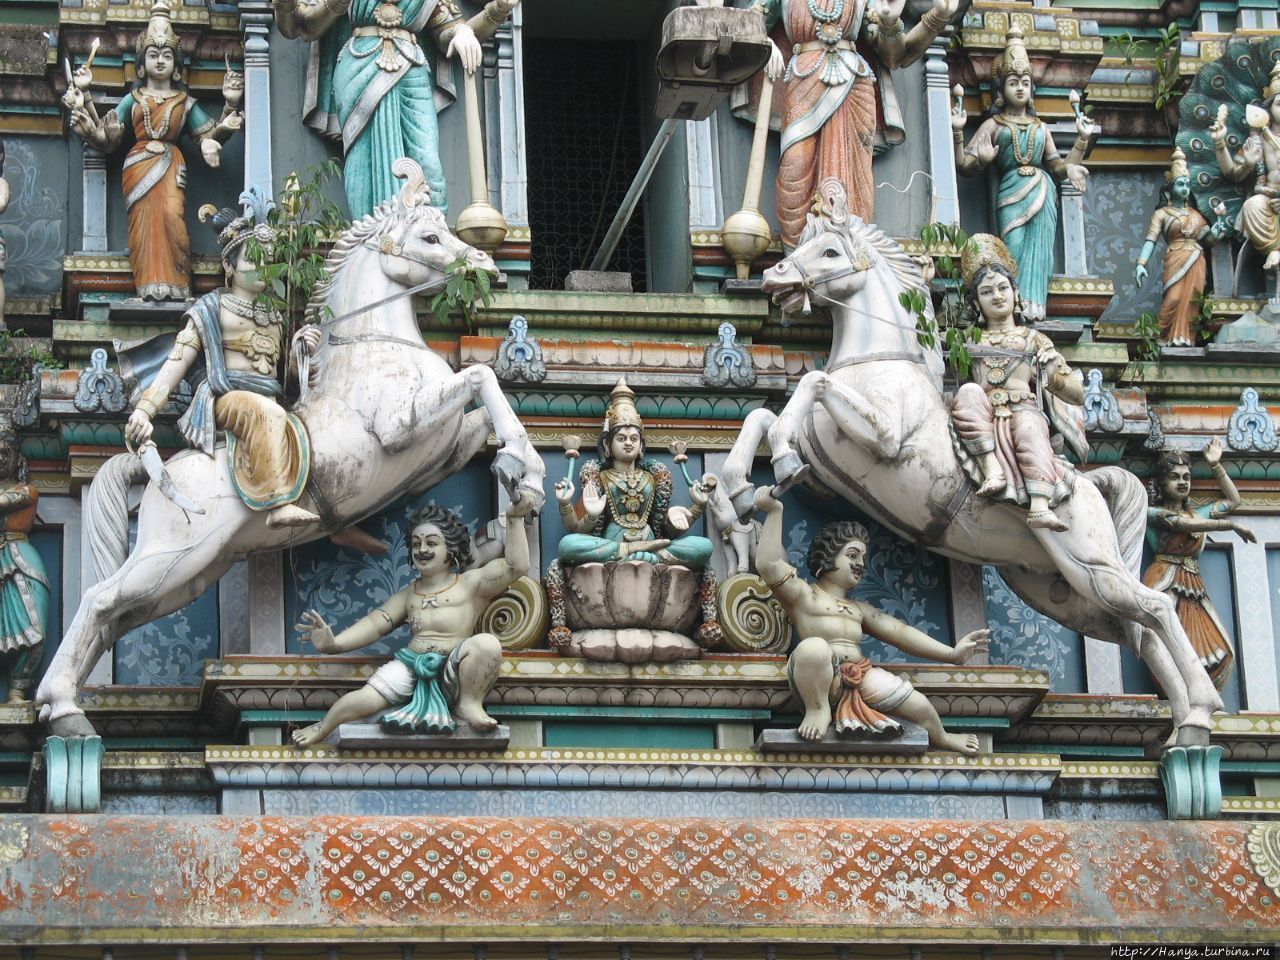 Храм Шри Махамариамман. Г